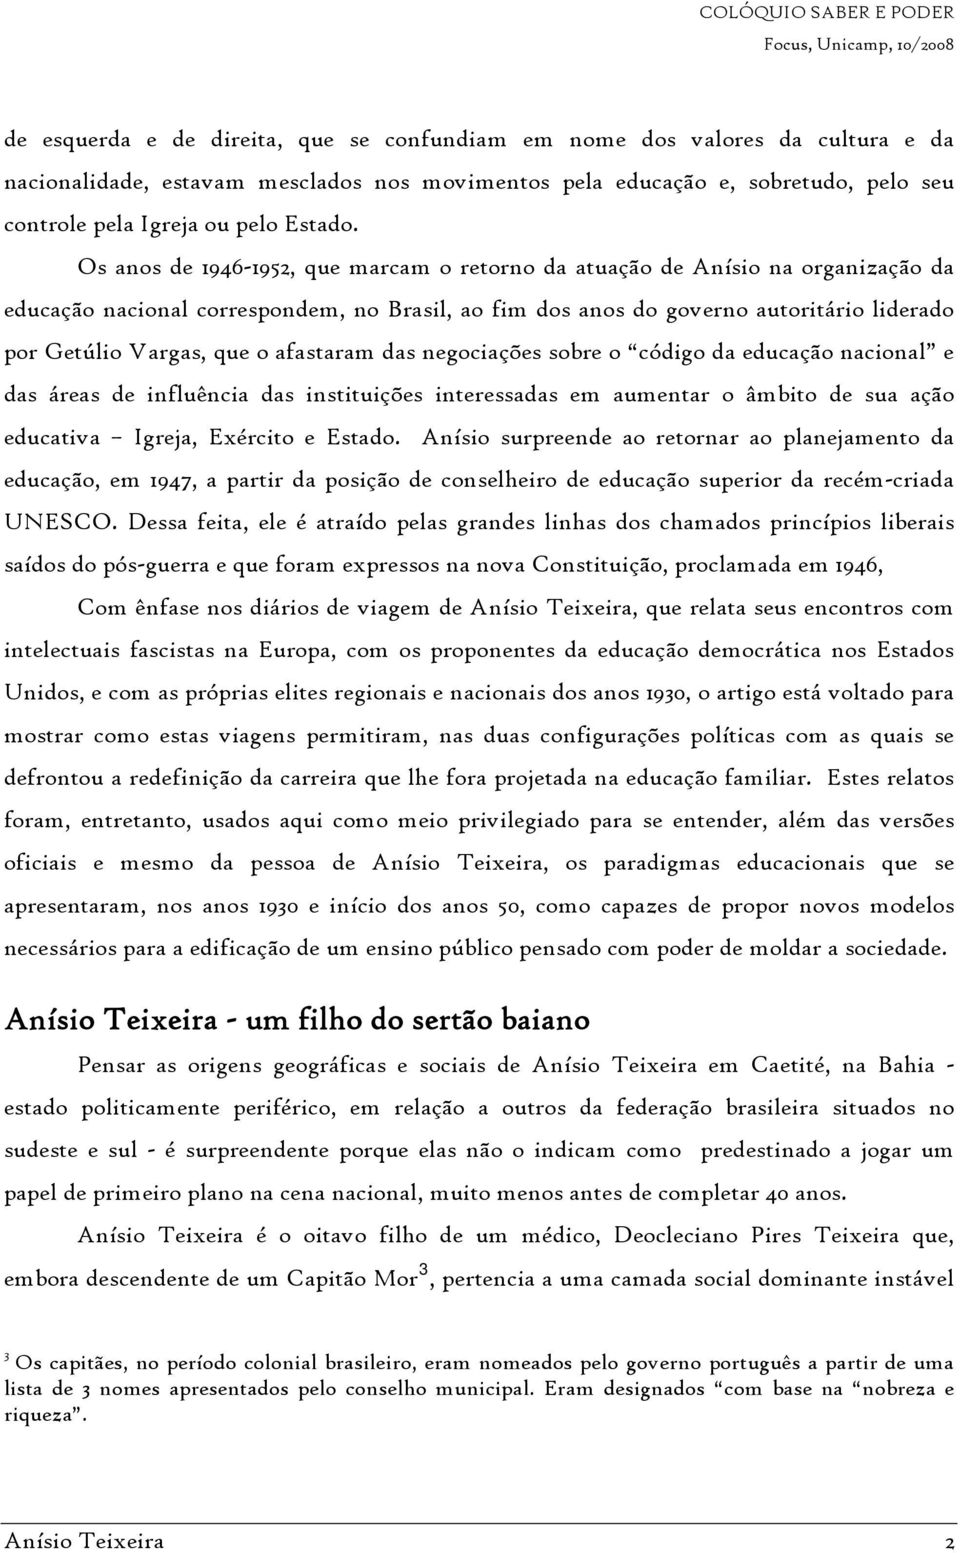 Os anos de 1946-1952, que marcam o retorno da atuação de Anísio na organização da educação nacional correspondem, no Brasil, ao fim dos anos do governo autoritário liderado por Getúlio Vargas, que o